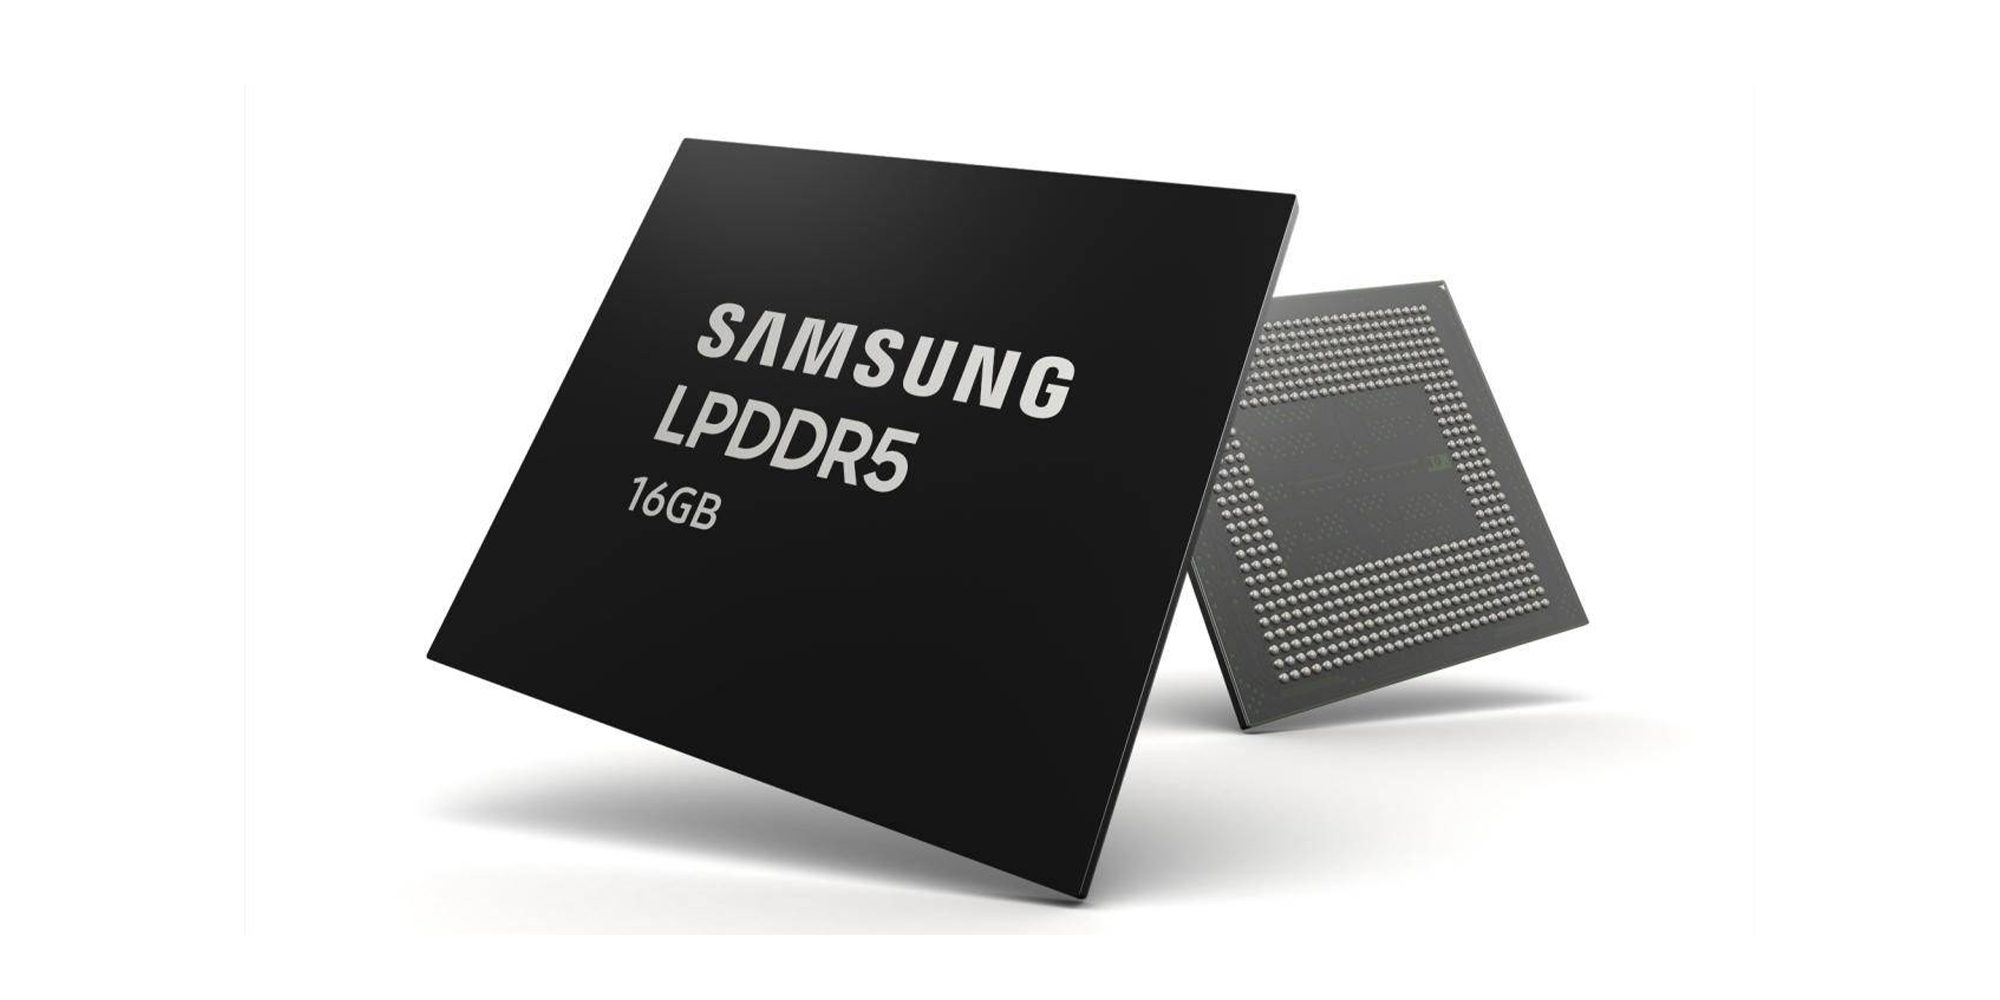 16 GB Samsung LPDDR5 minneschip är avsett för massproduktionssmartphones